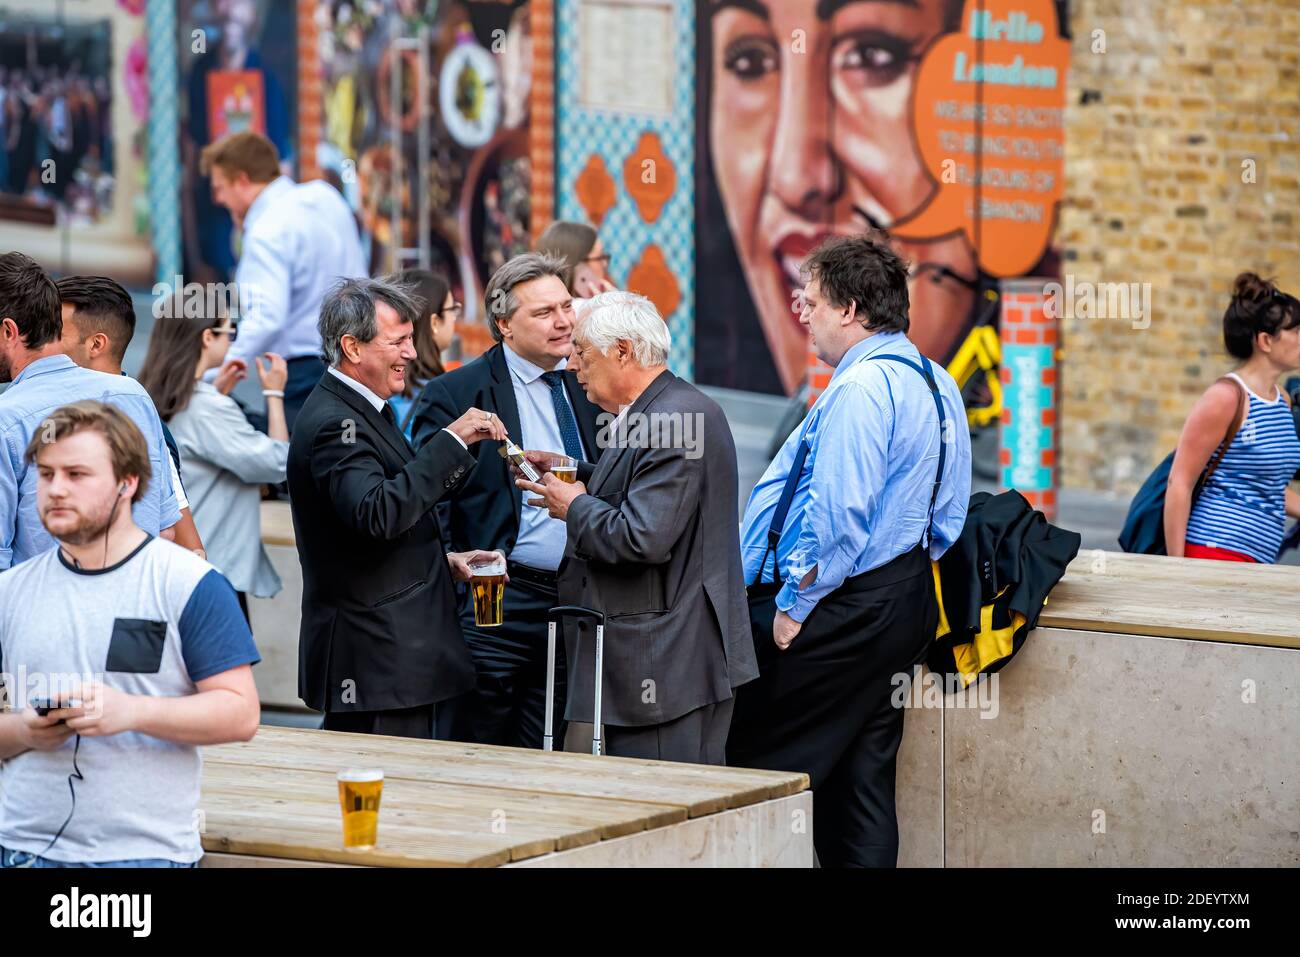 Londra, Regno Unito - 22 giugno 2018: Gruppo di molti uomini d'affari che si trovano fuori in Inghilterra al pub tavern bar Shipwrights Arms bevendo birra dalla tazza Foto Stock